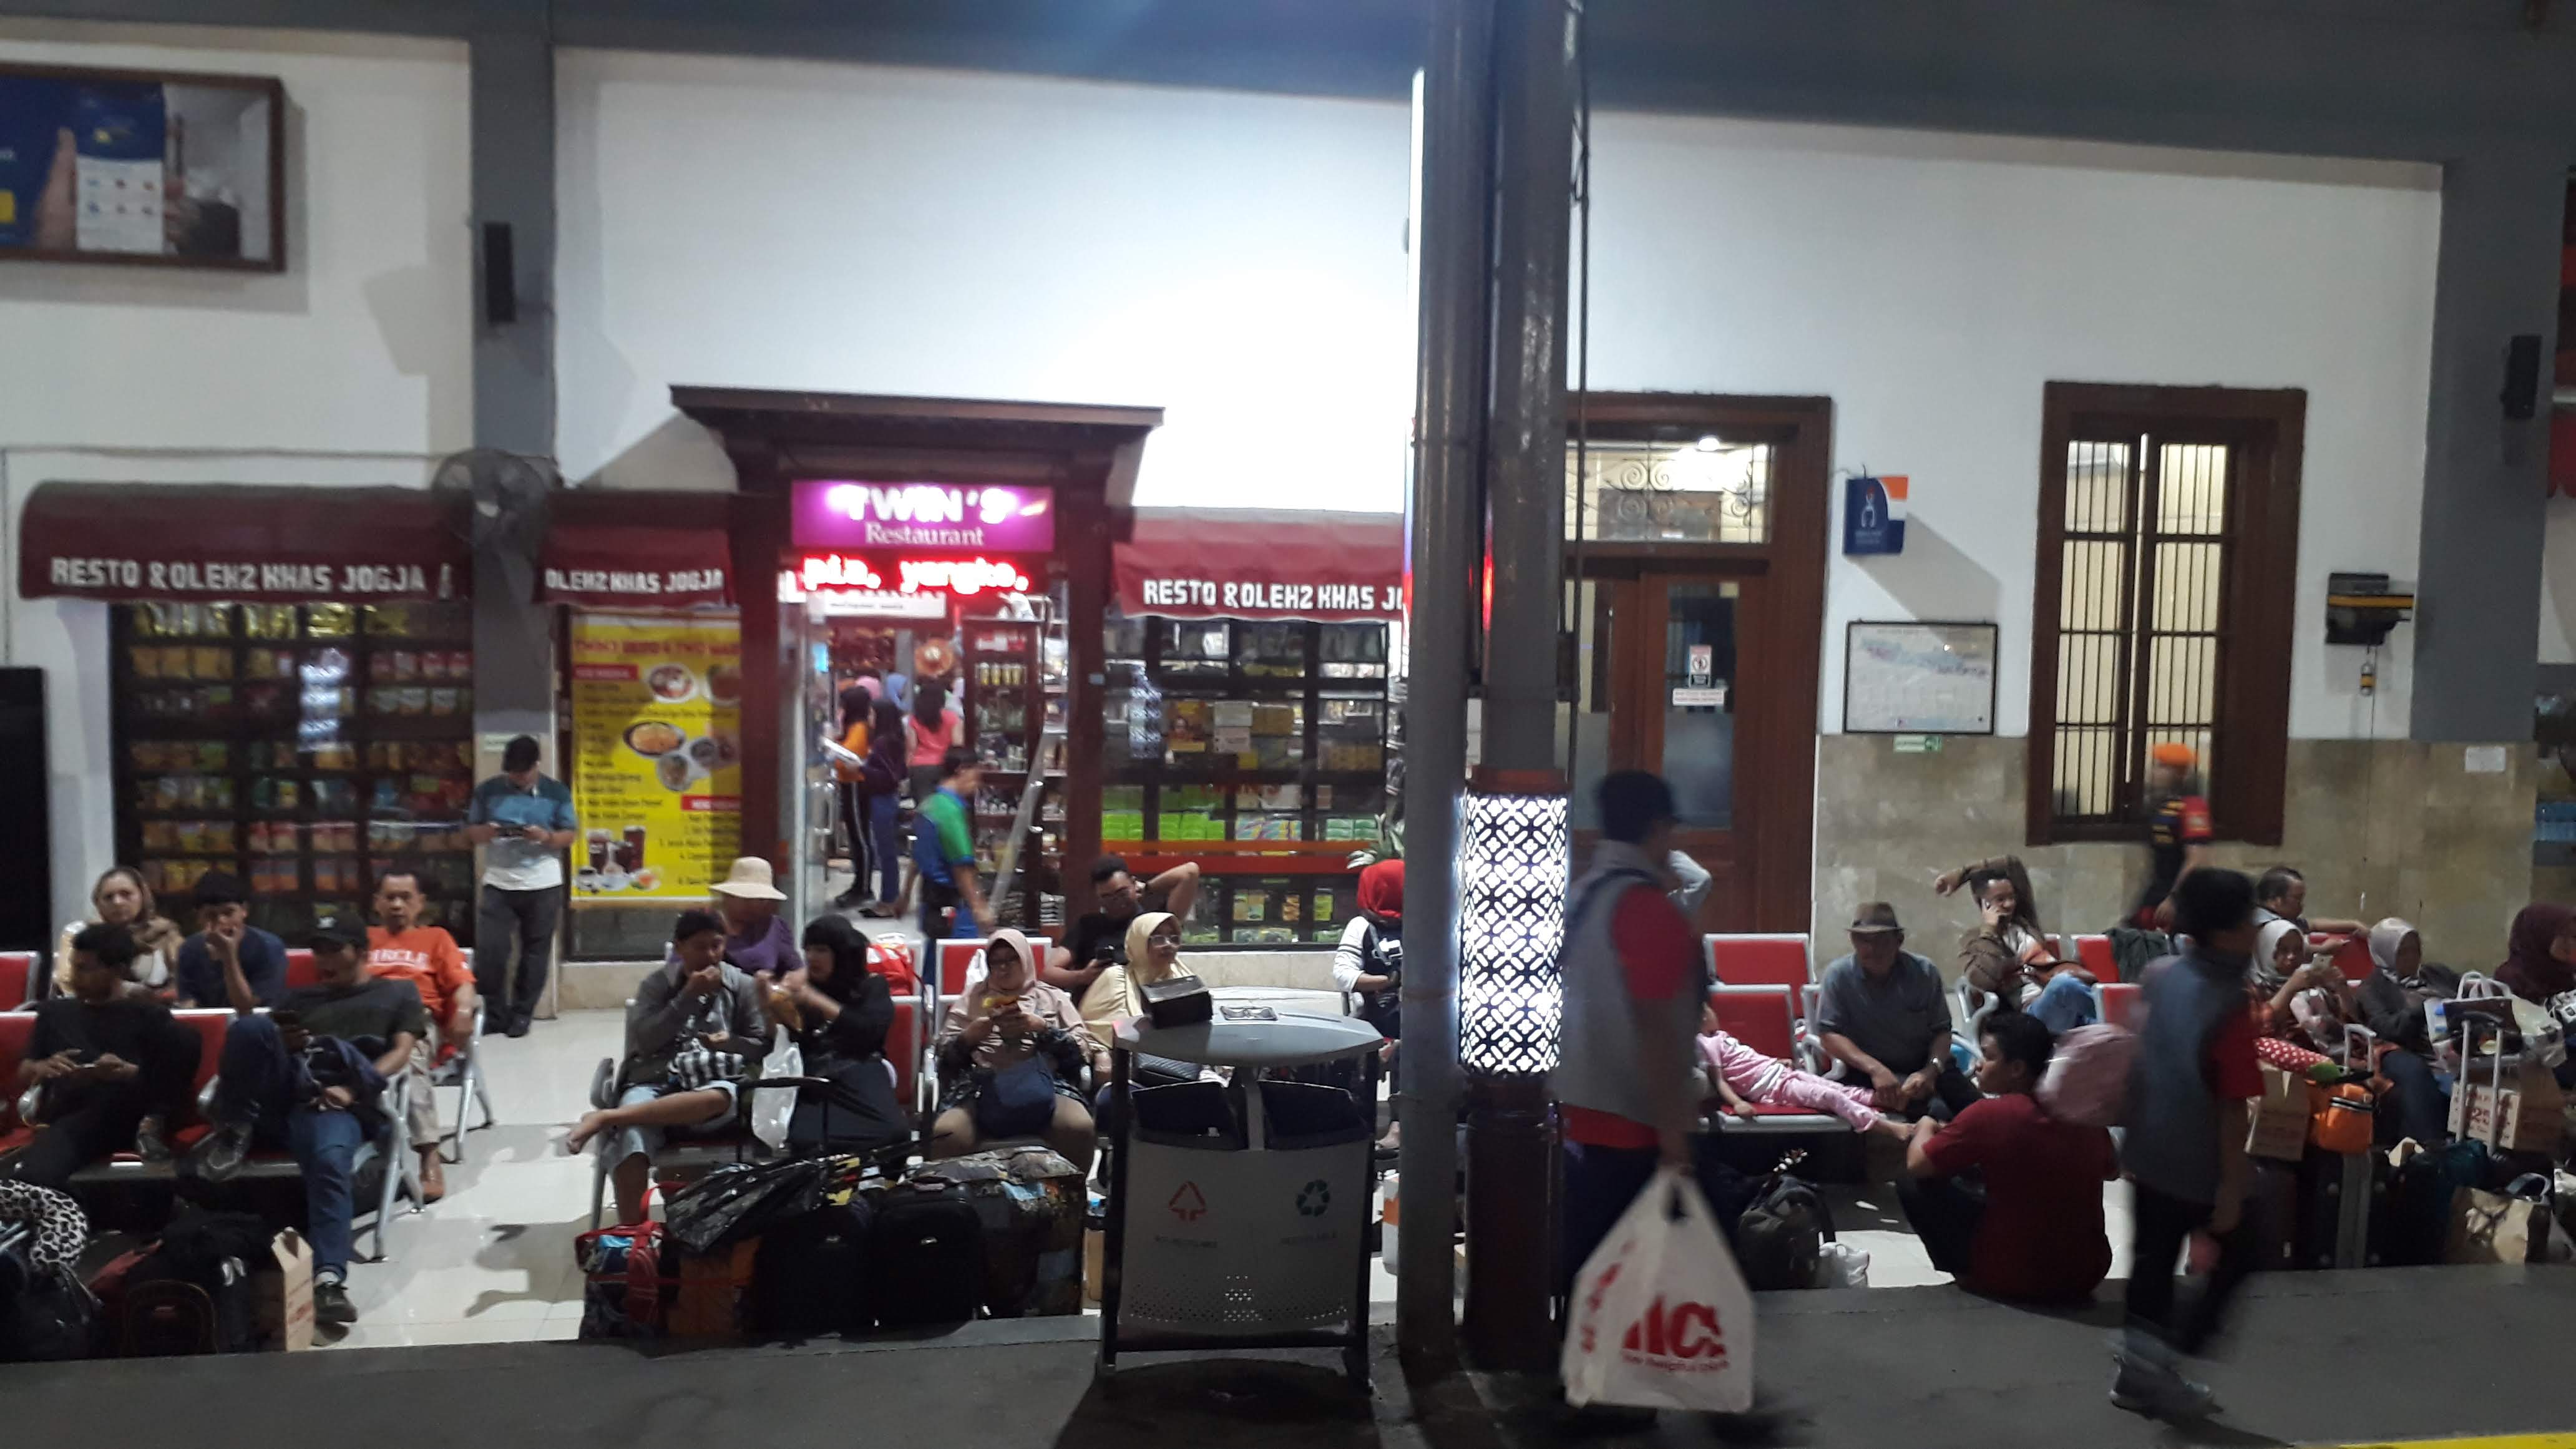 Stasiun Tugu Yogyakarta Yang Bersejarah Kini Kian Bersih Dan Nyaman